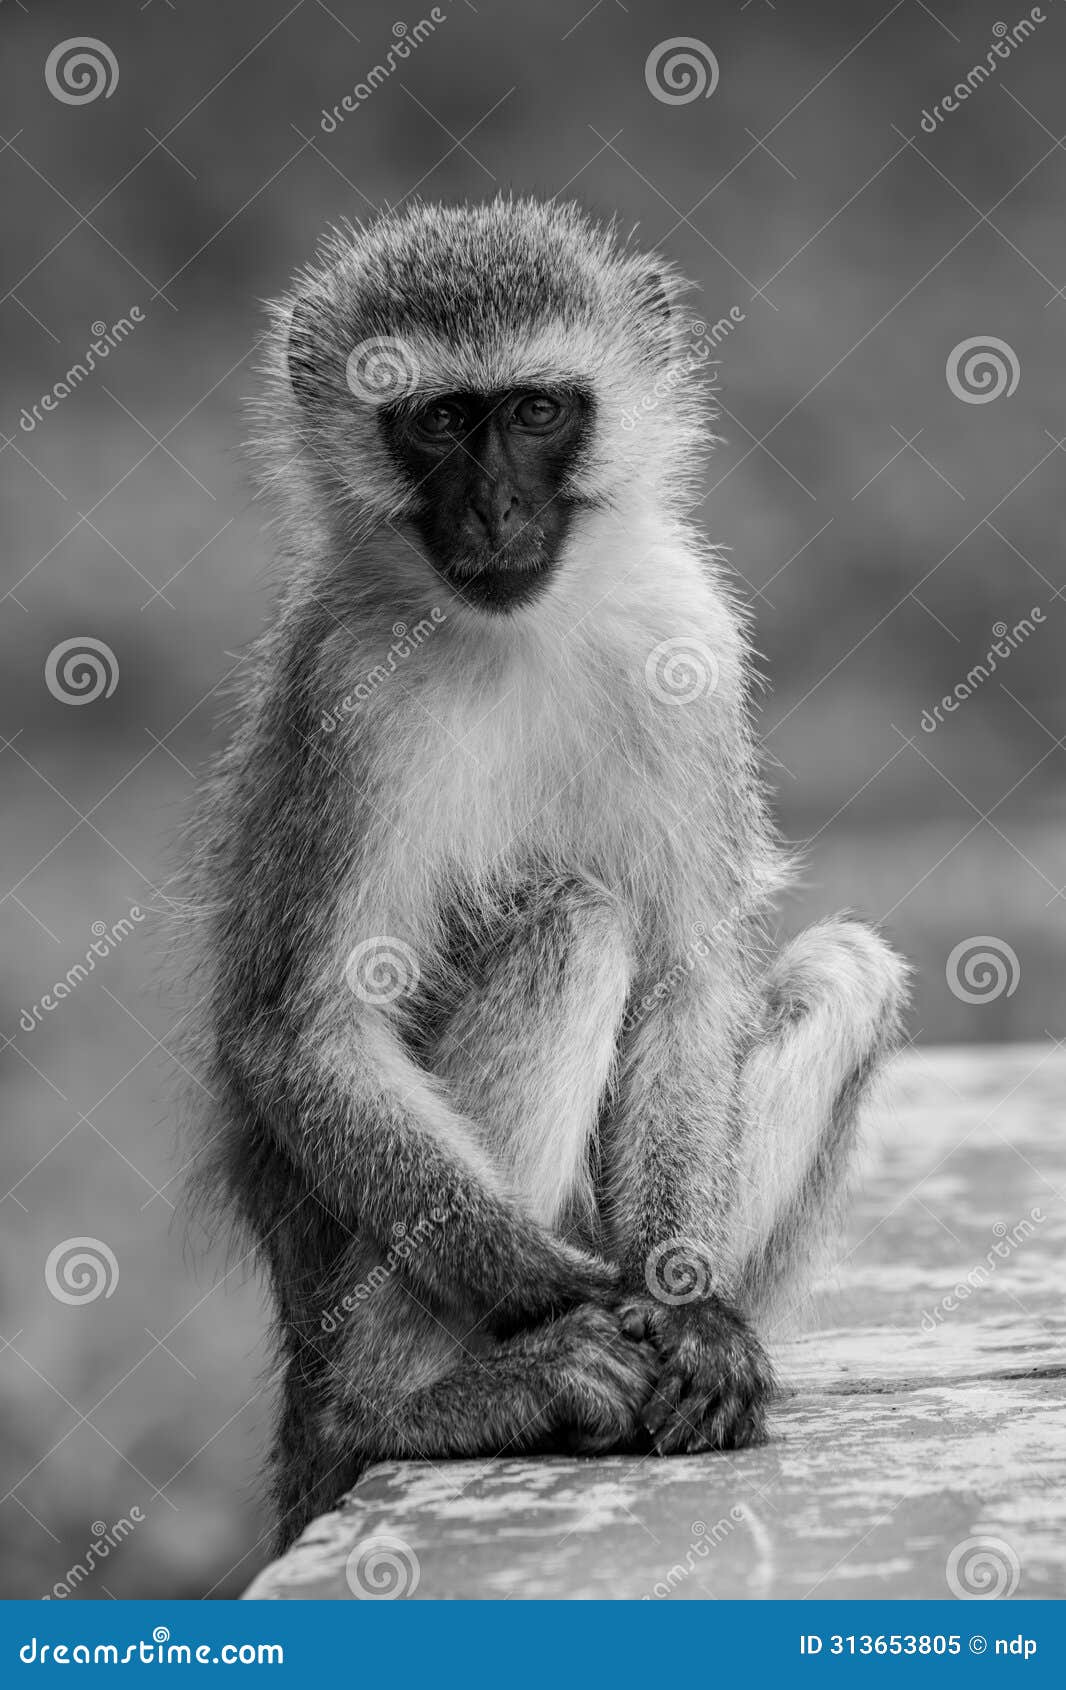 mono vervet monkey on wall facing camera